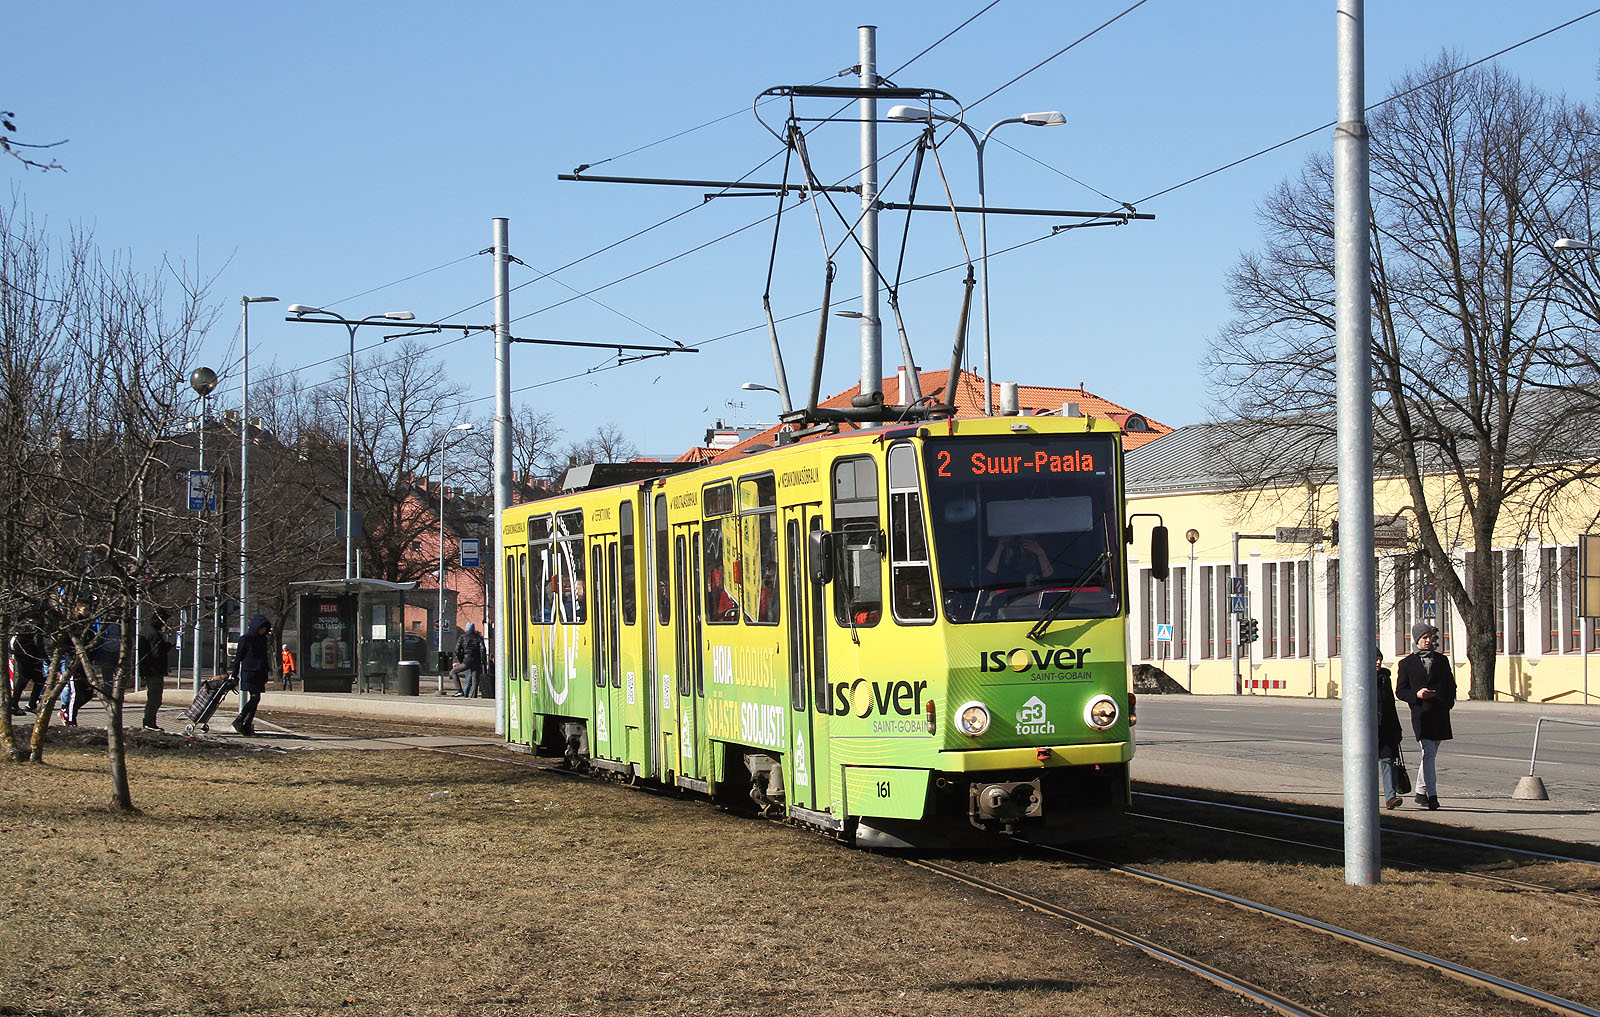 Tramvaje KT4 československé výroby v Tallinnu disponují neobvyklým rozchodem 1067 mm, typickým pro Japonské dráhy.